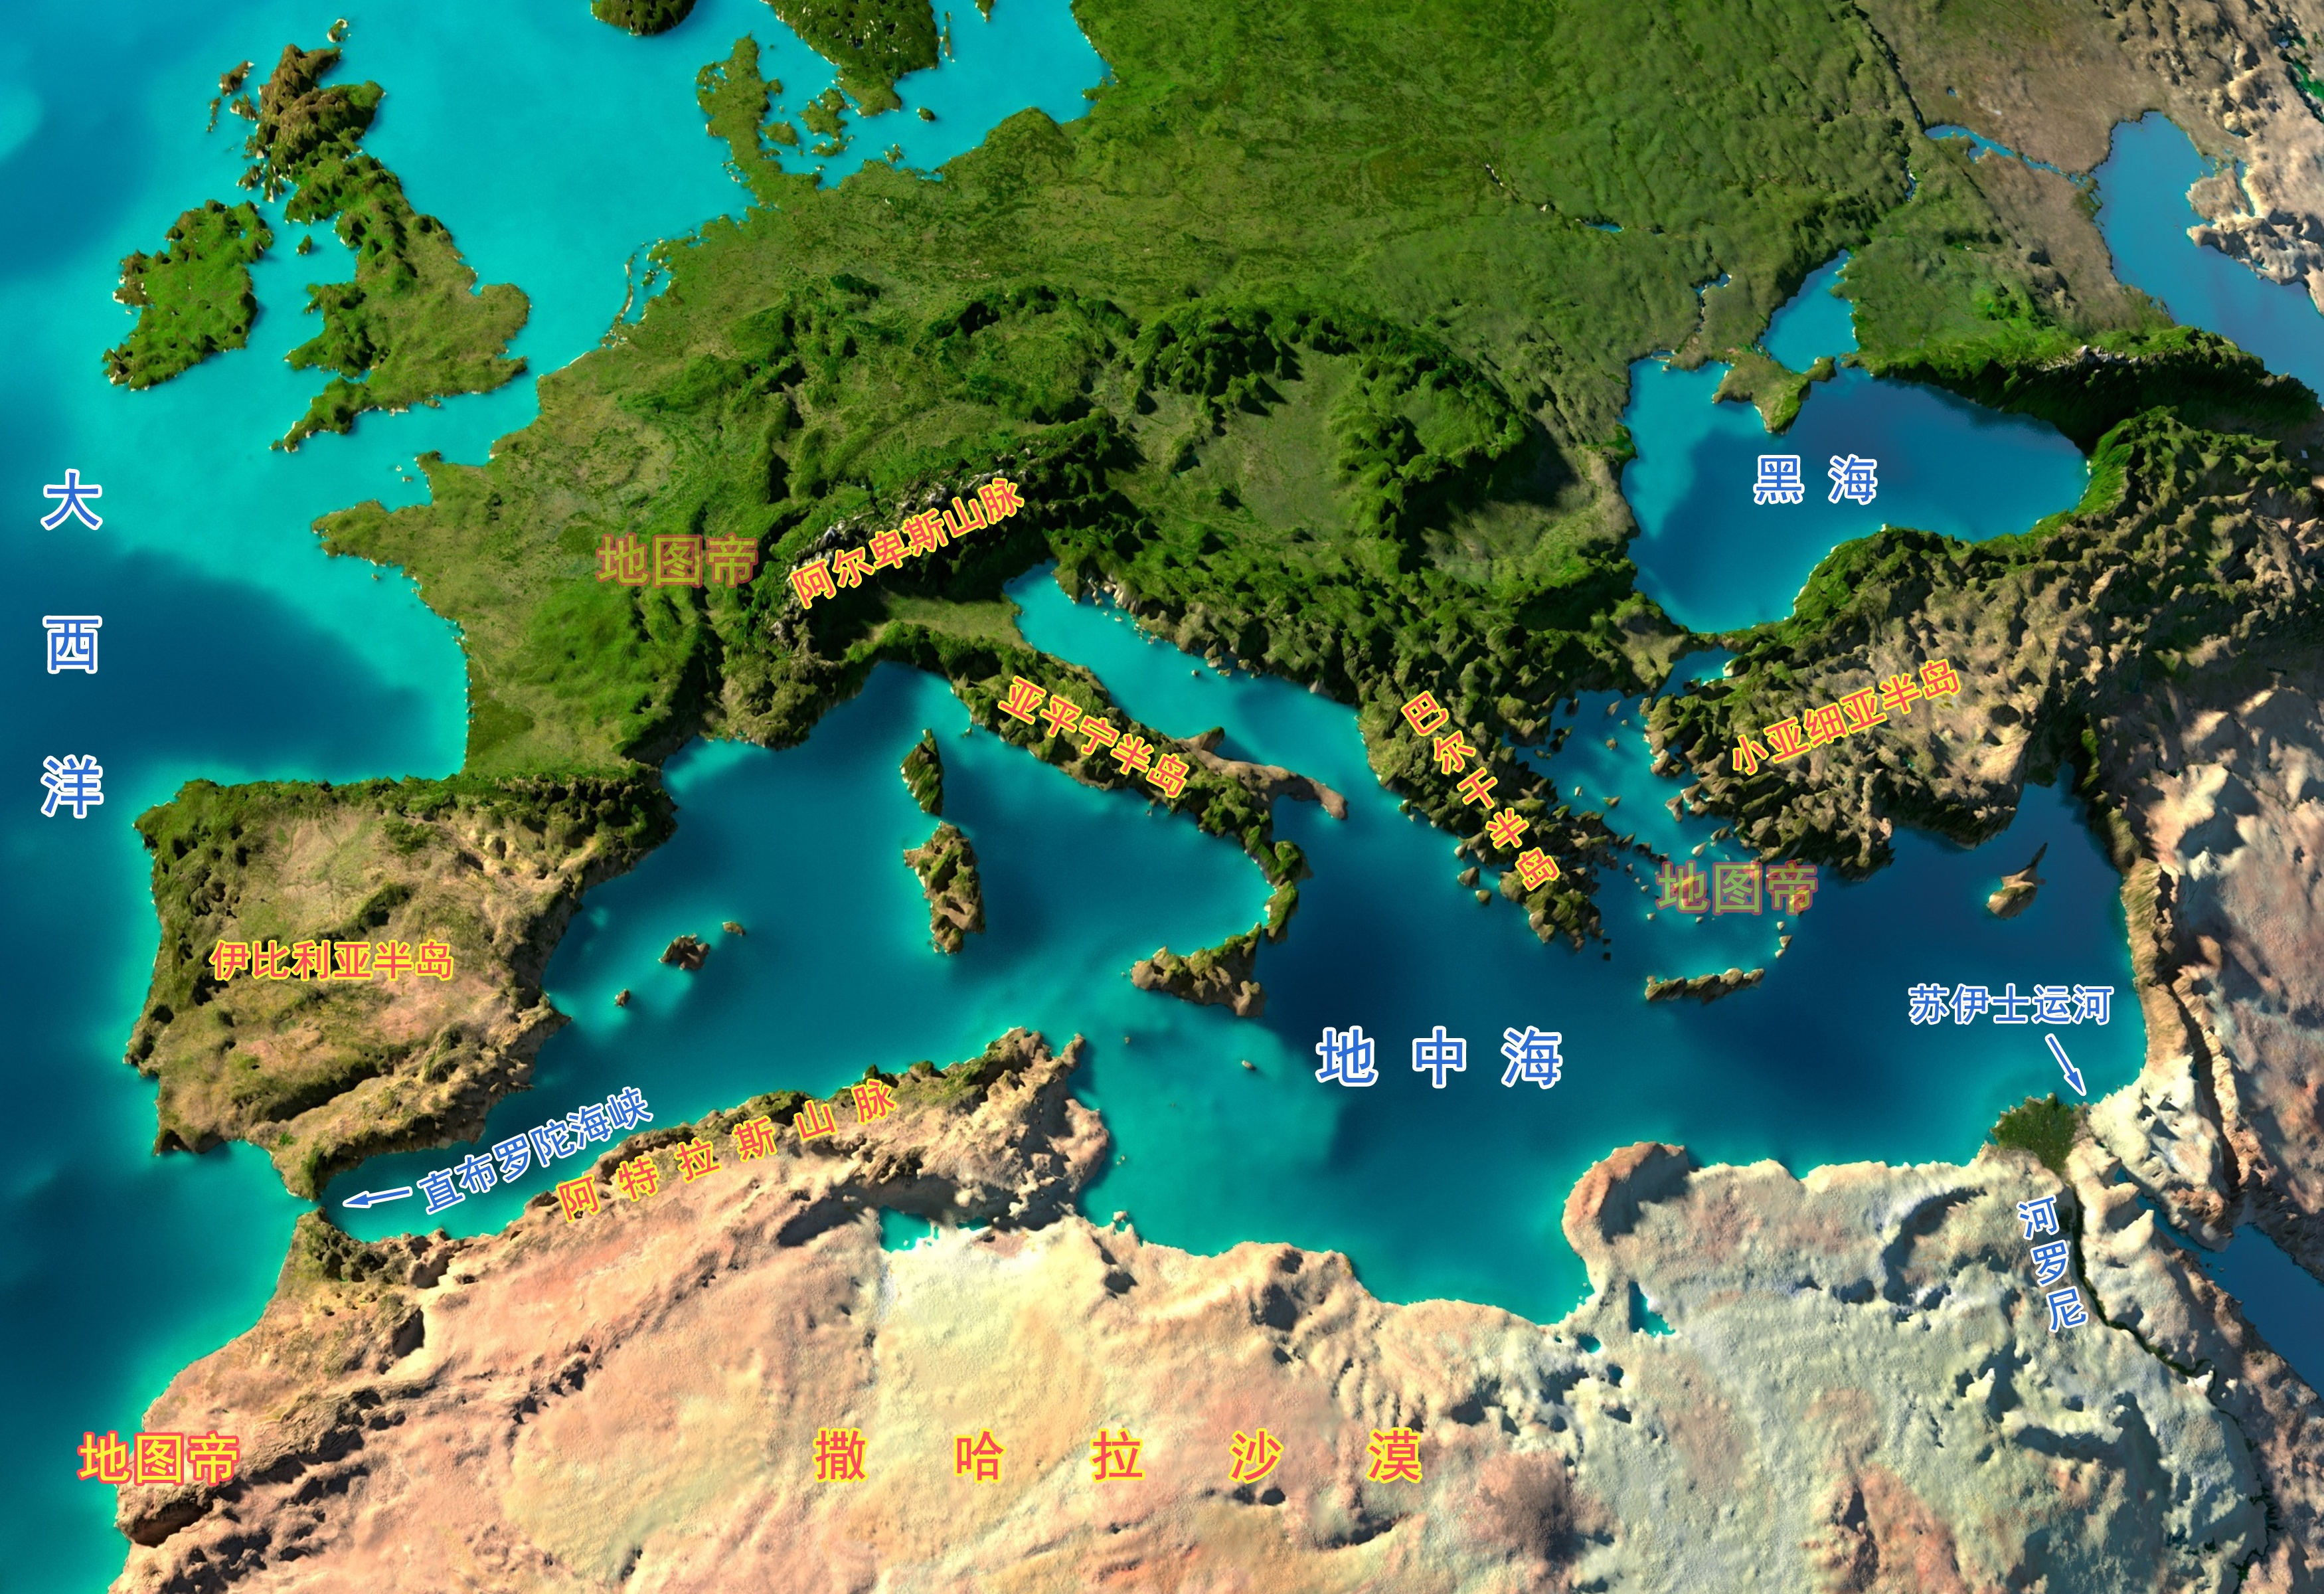 地中海与三个大洲相邻,沿岸有多少个国家?